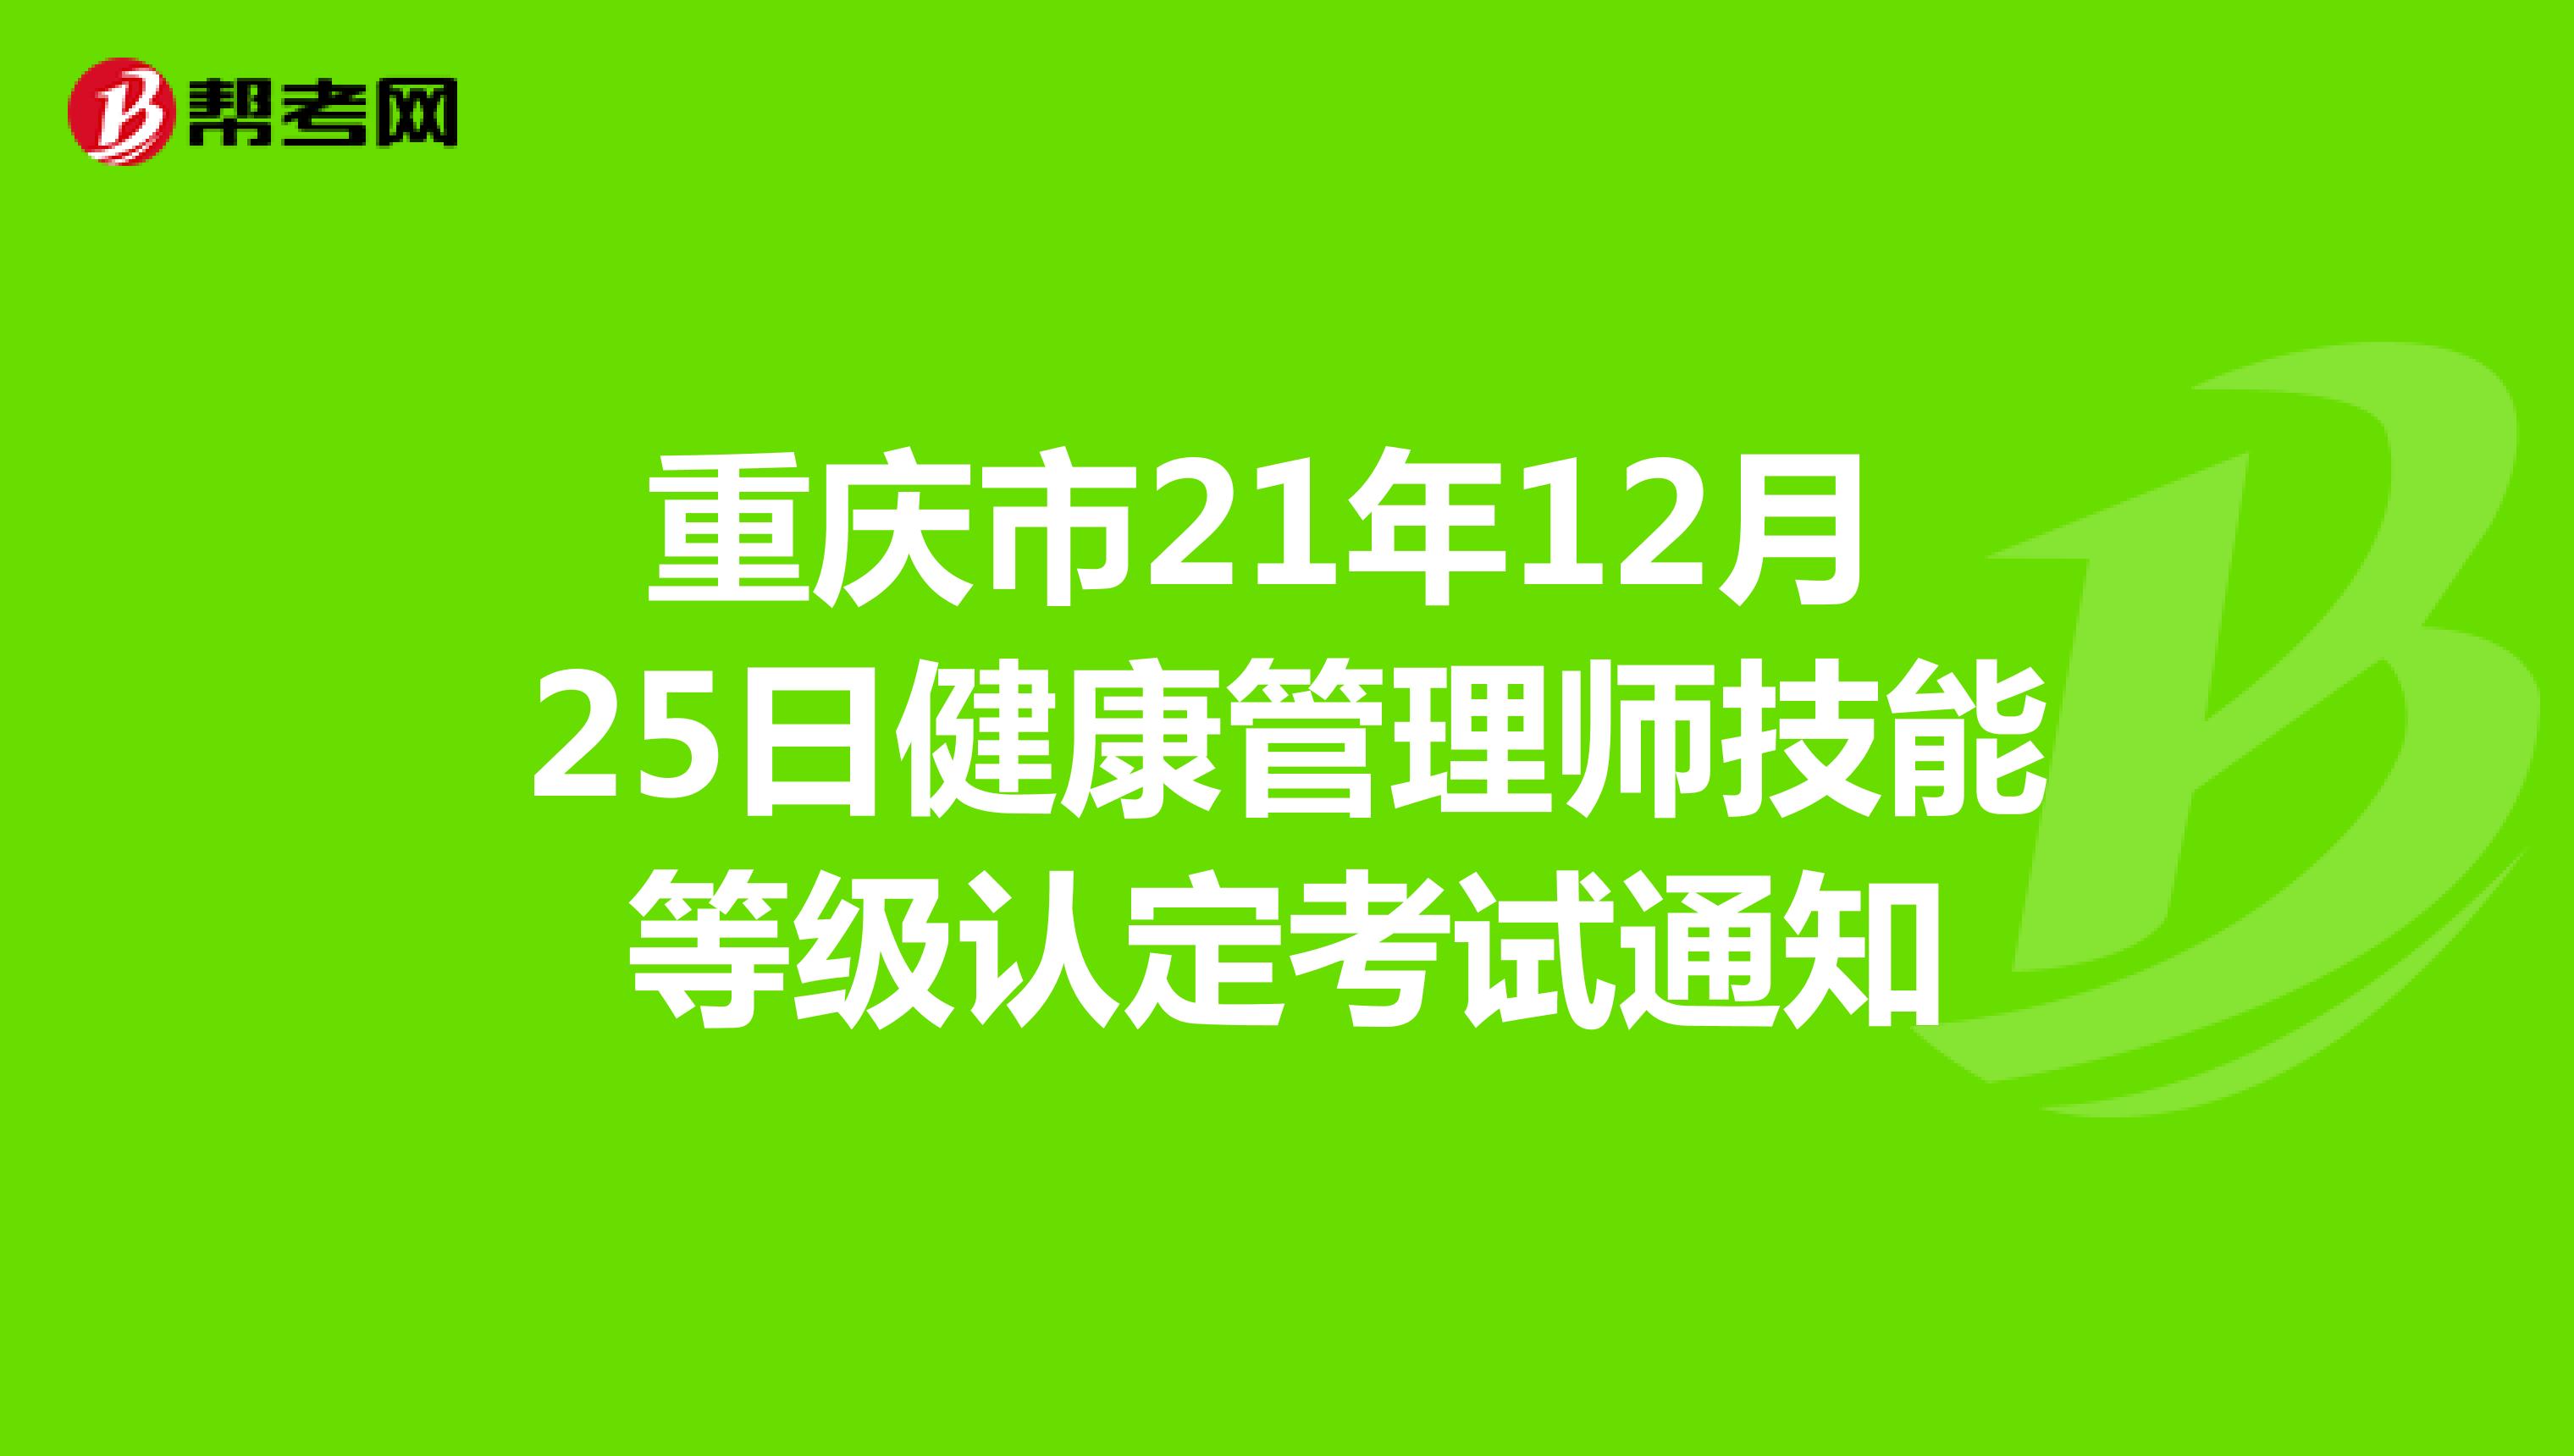 重庆市21年12月25日健康管理师技能等级认定考试通知